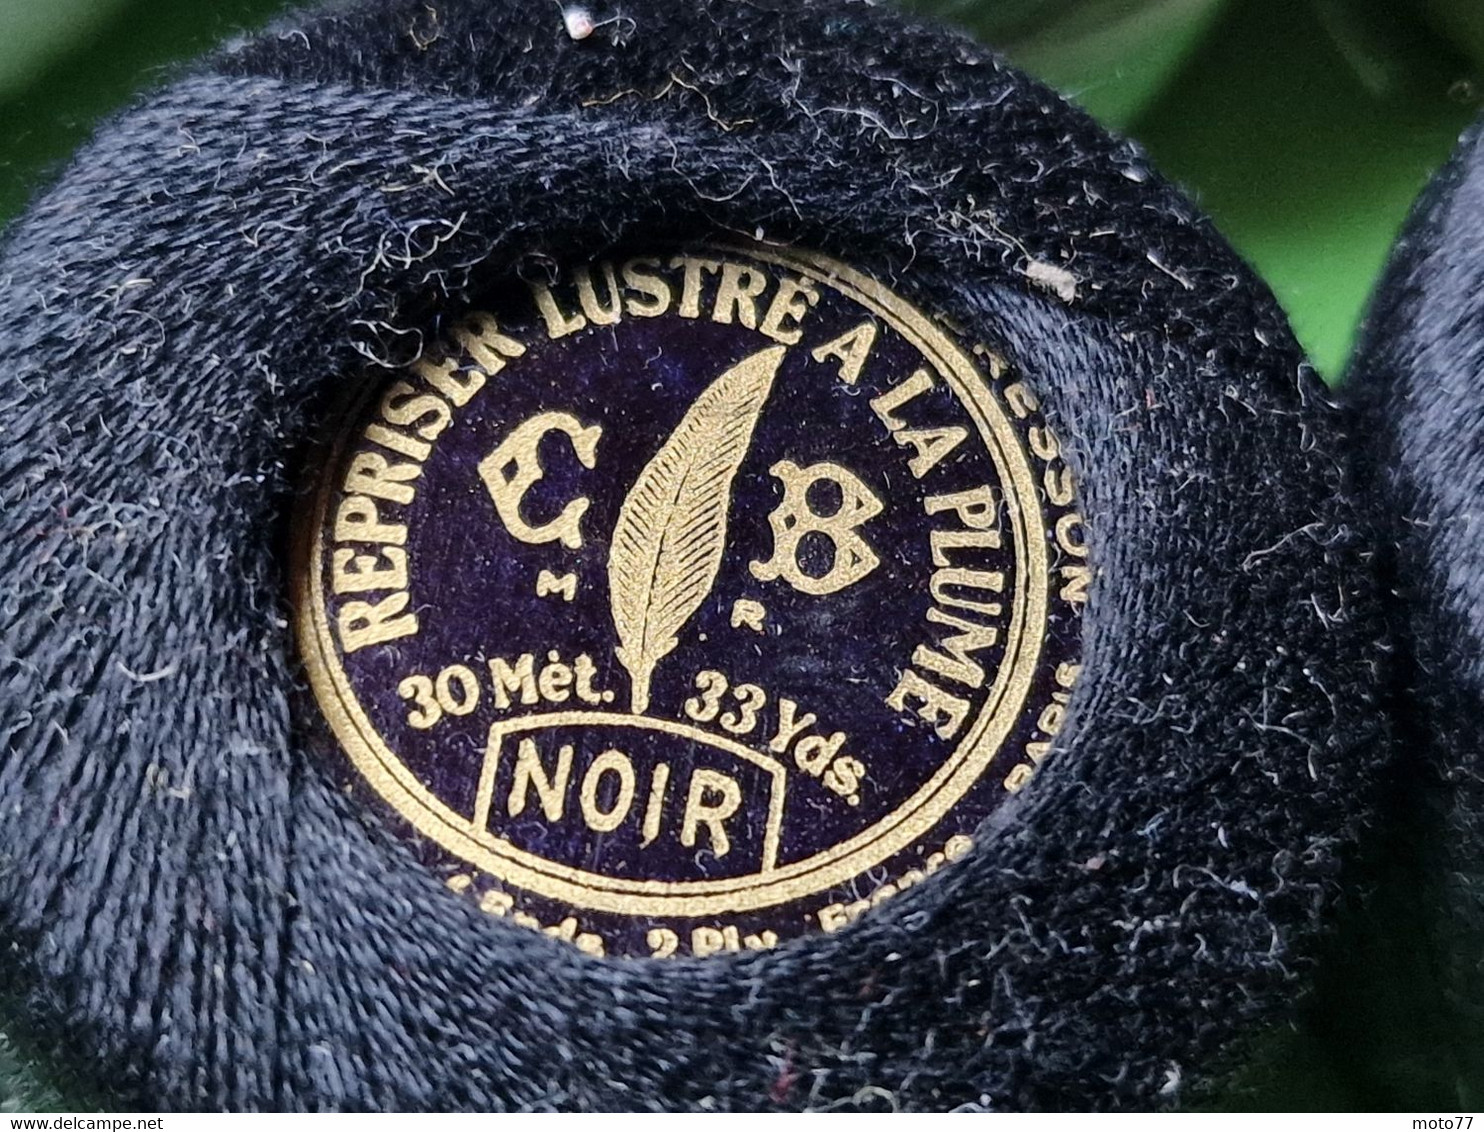 Lot 20 anciens ROULEAUX FIL à Coudre Couturière Mercerie "neuf de stock" - étiquette prix GOULET TURPIN - vers 1950